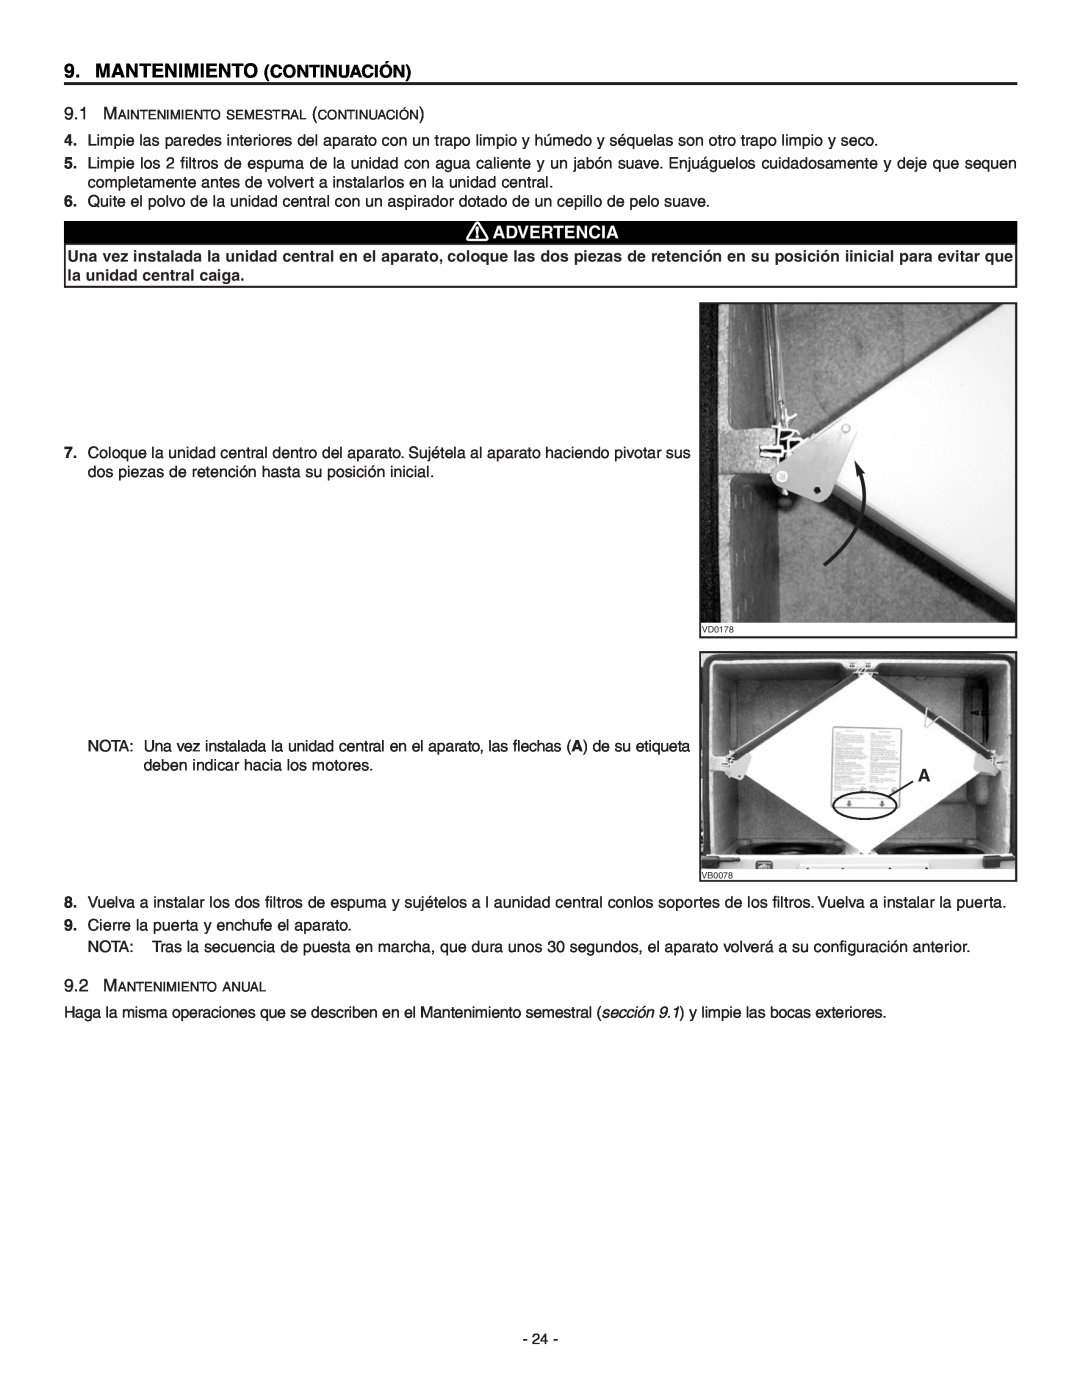 Broan ERV90HCT installation instructions Mantenimiento Continuación, Advertencia 